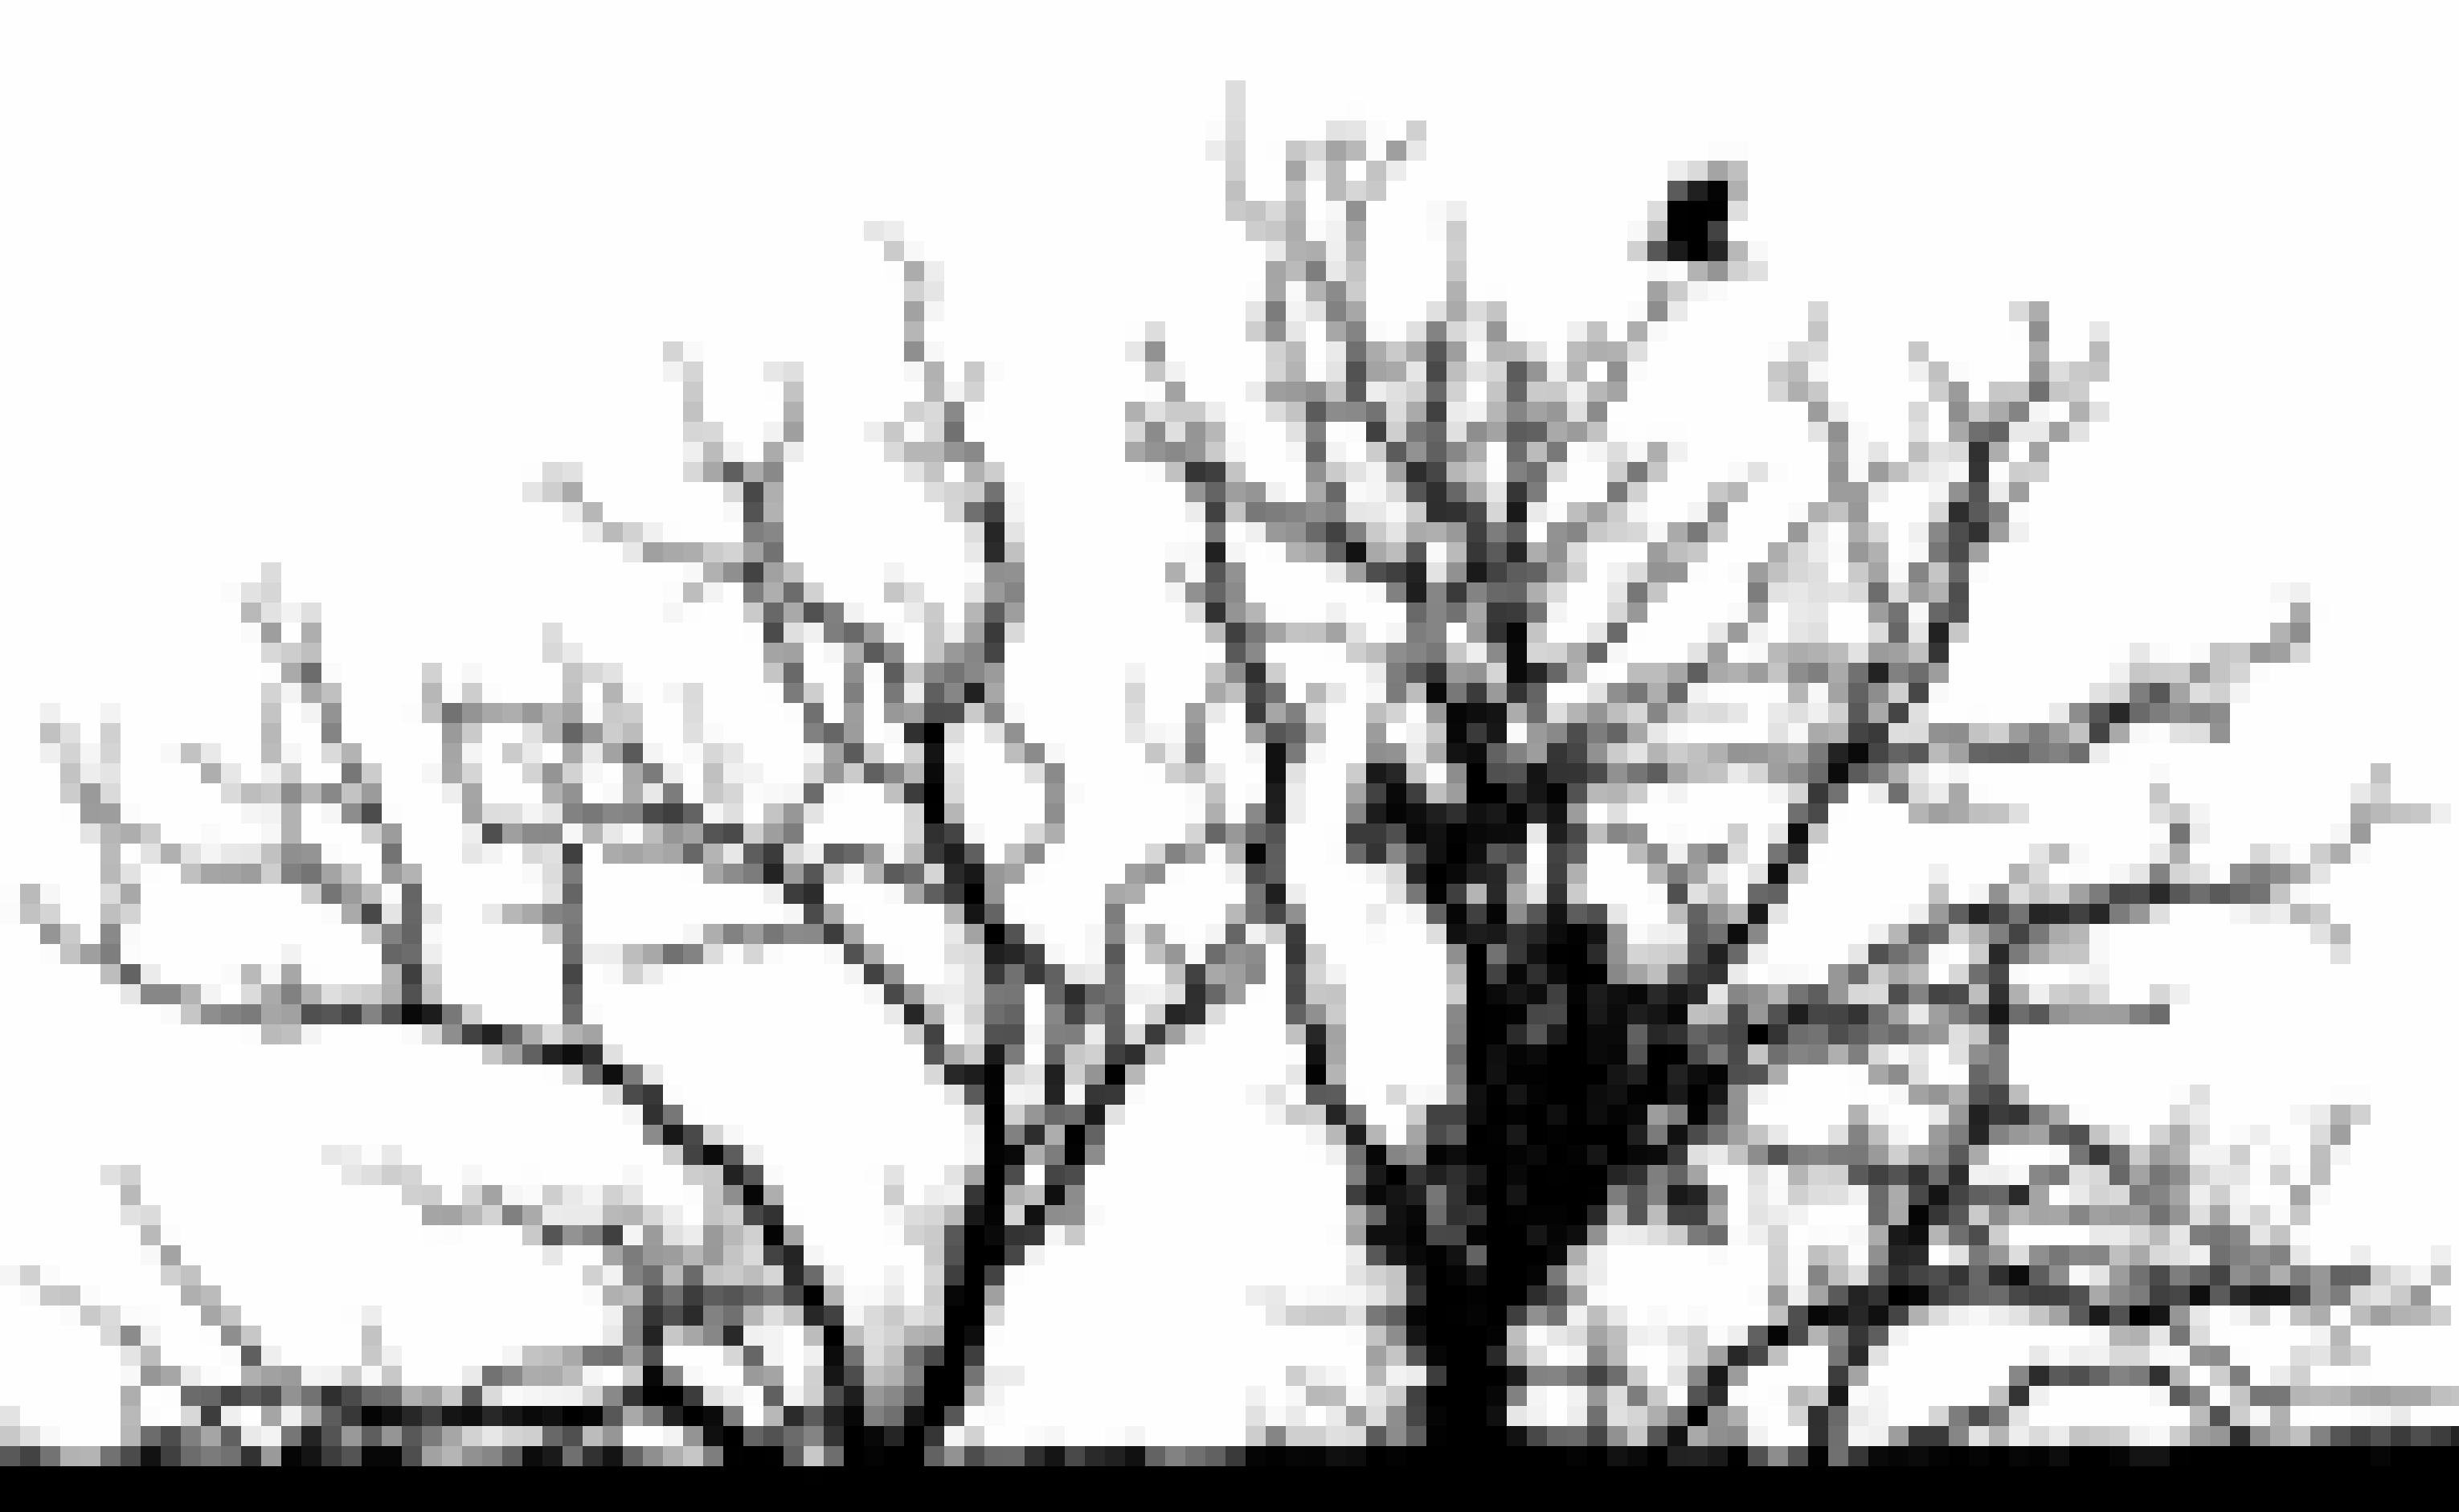 Ein Kolkrabe fliegt in einen kahlen Baum. Baum und Vogel sind nur als Silhouette erkennbar.